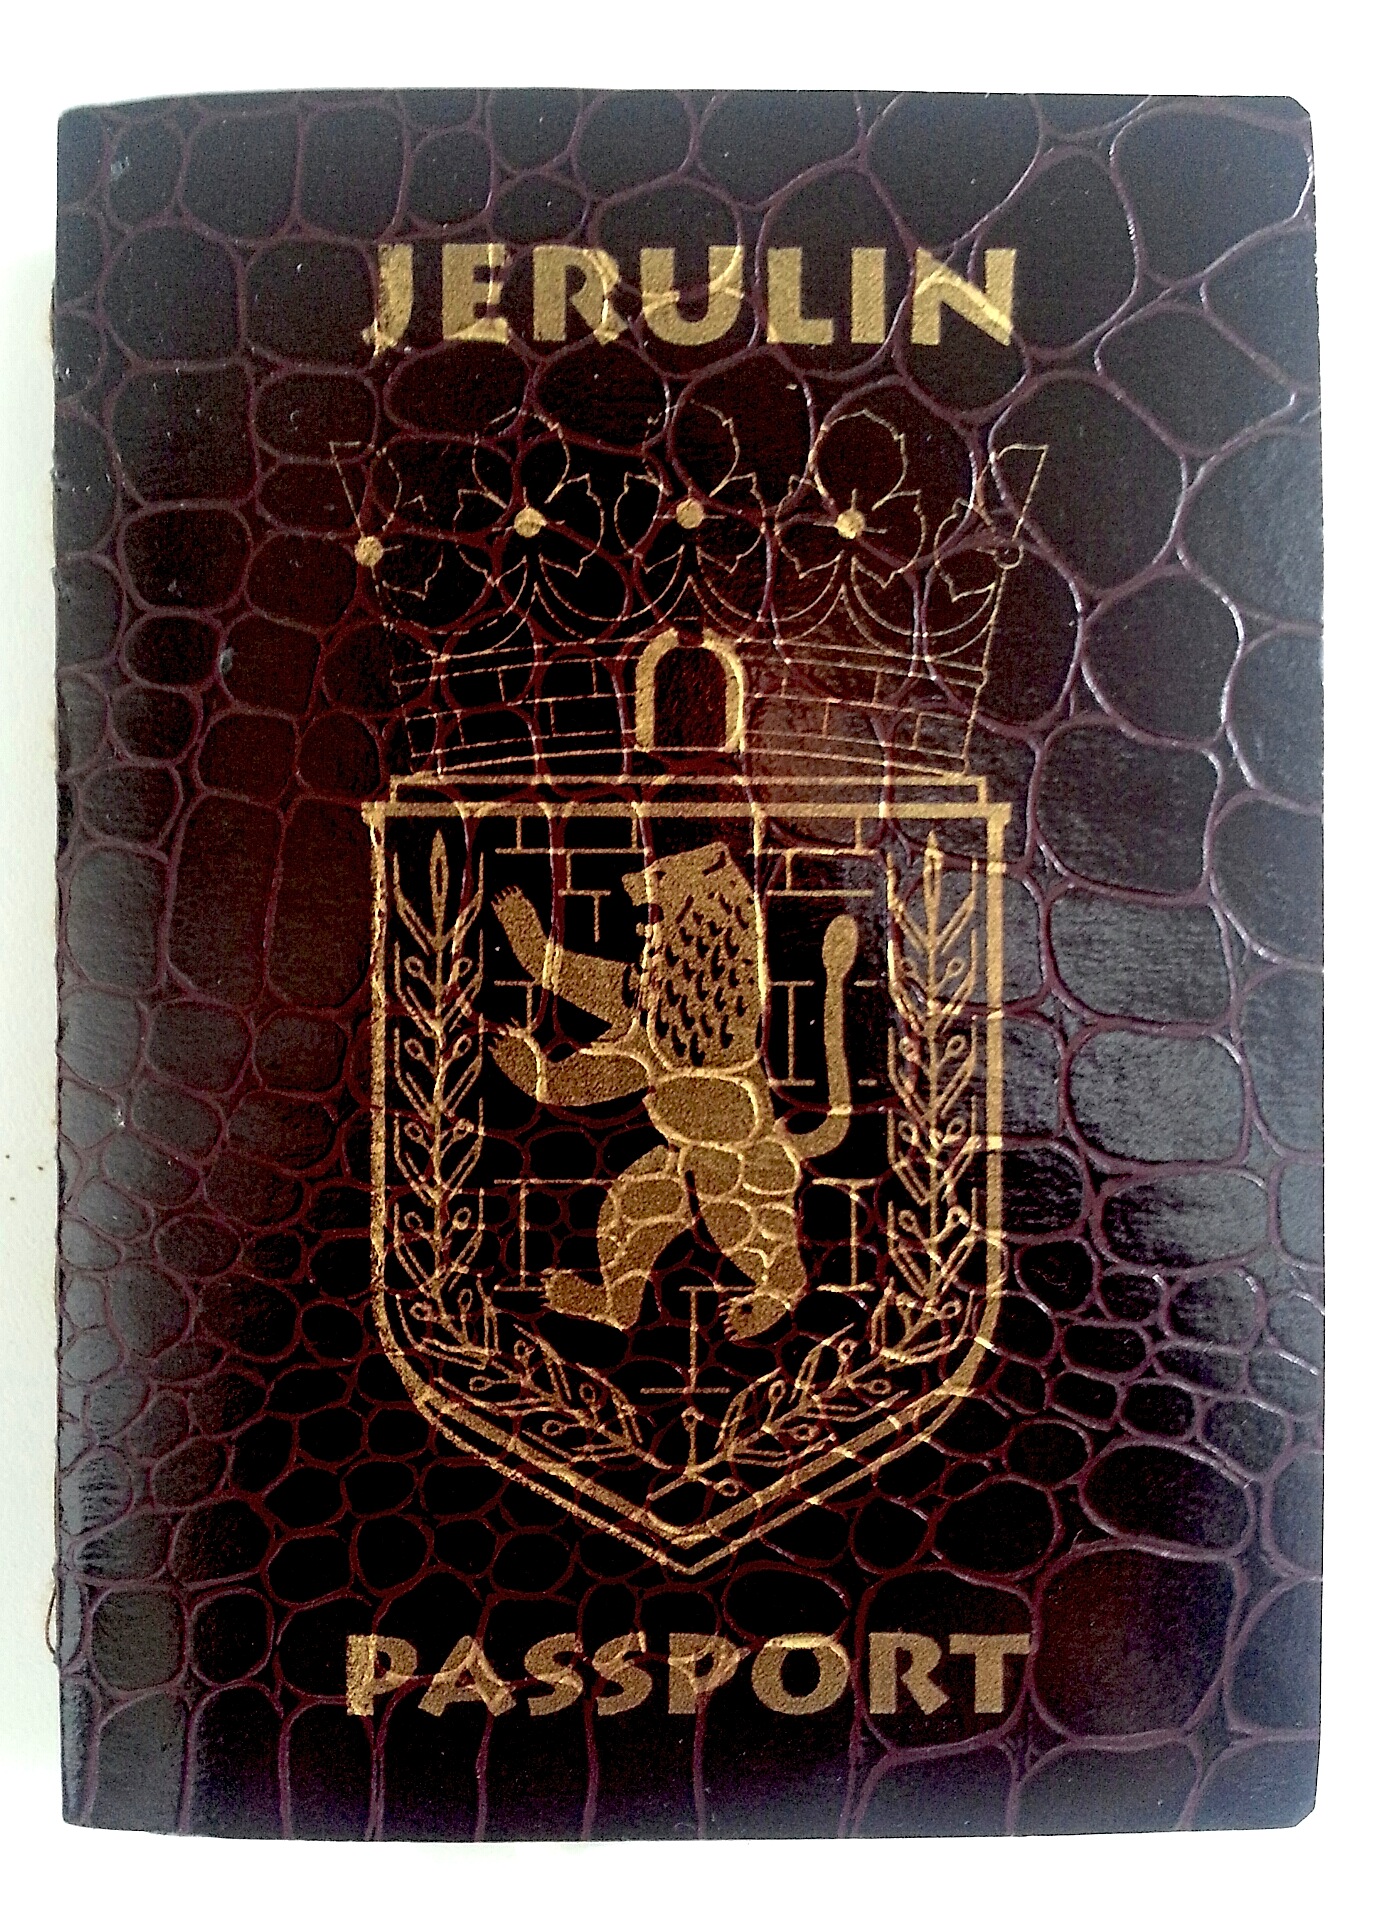 Jerulin passport (photo: Guy Briller)